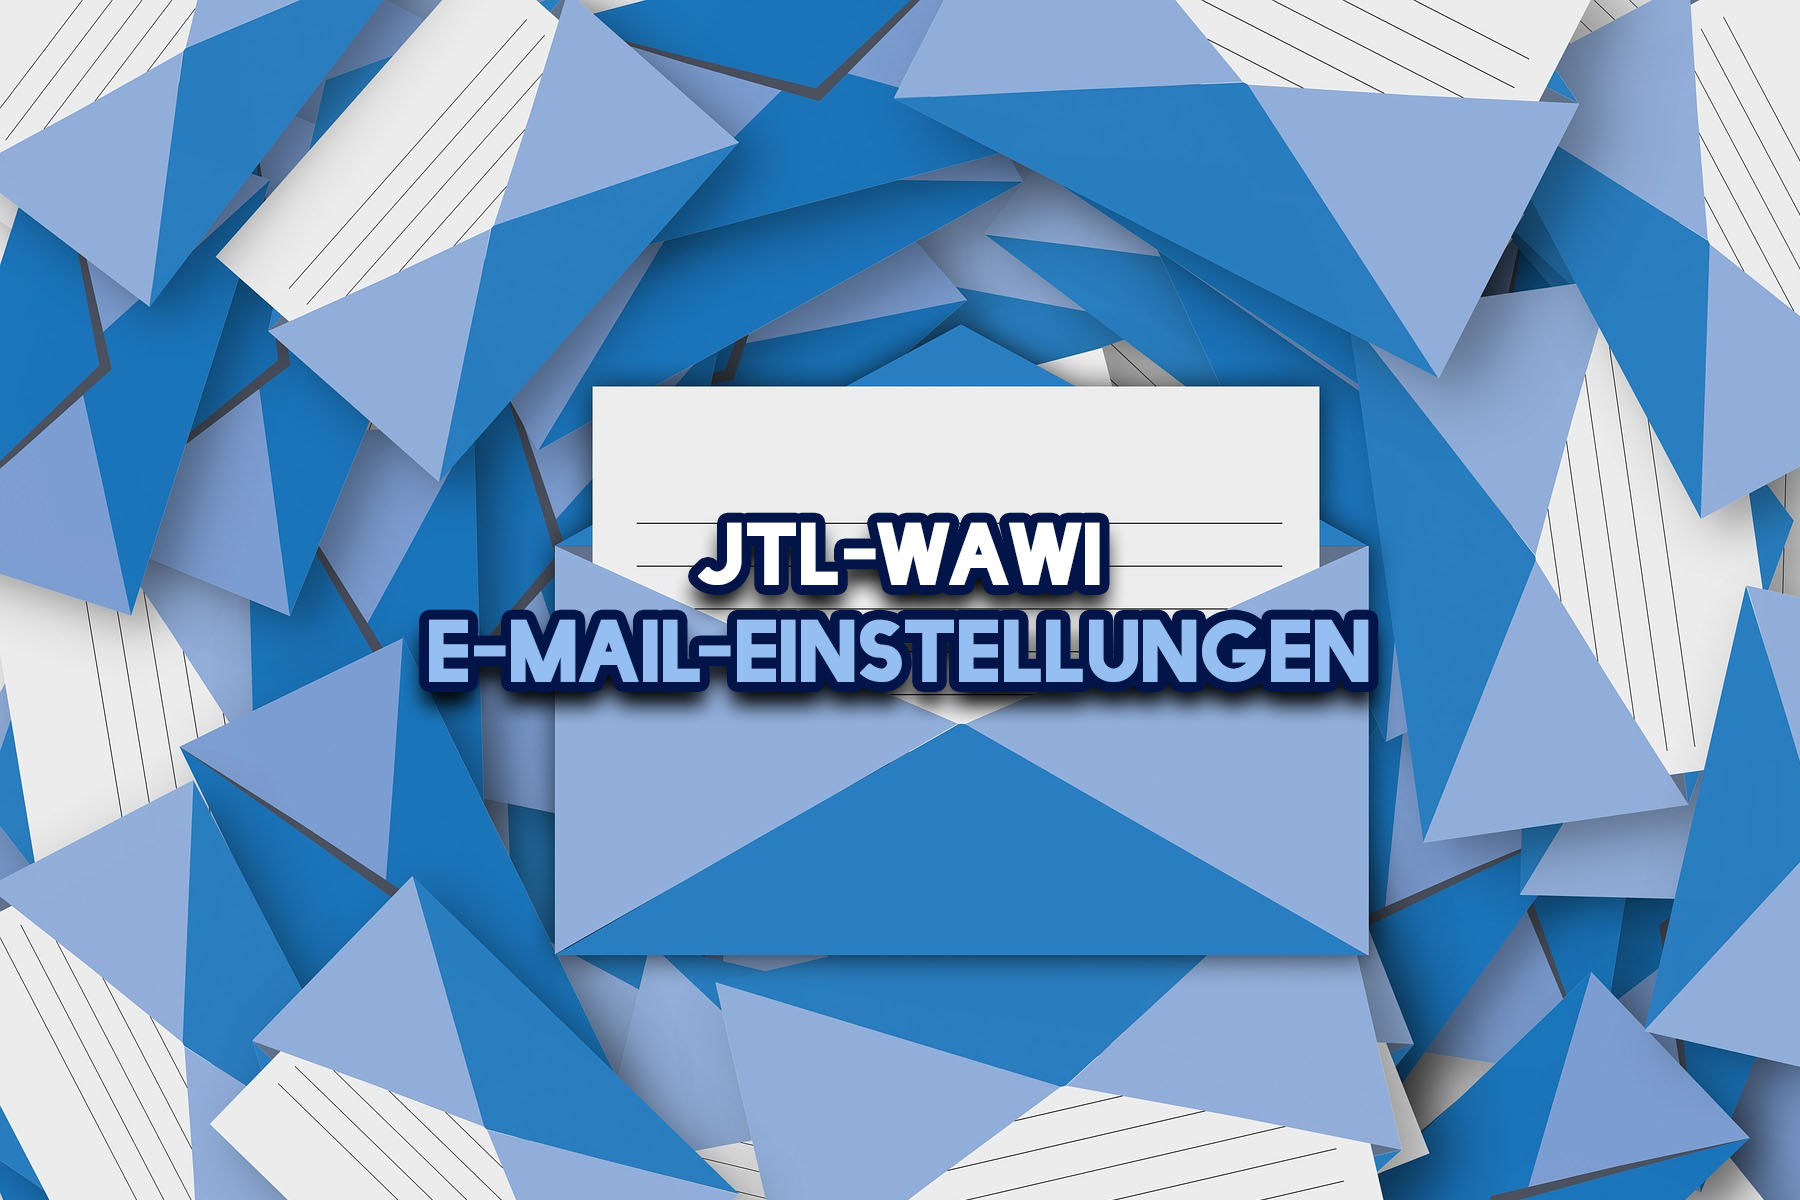 JTL-Wawi email settings